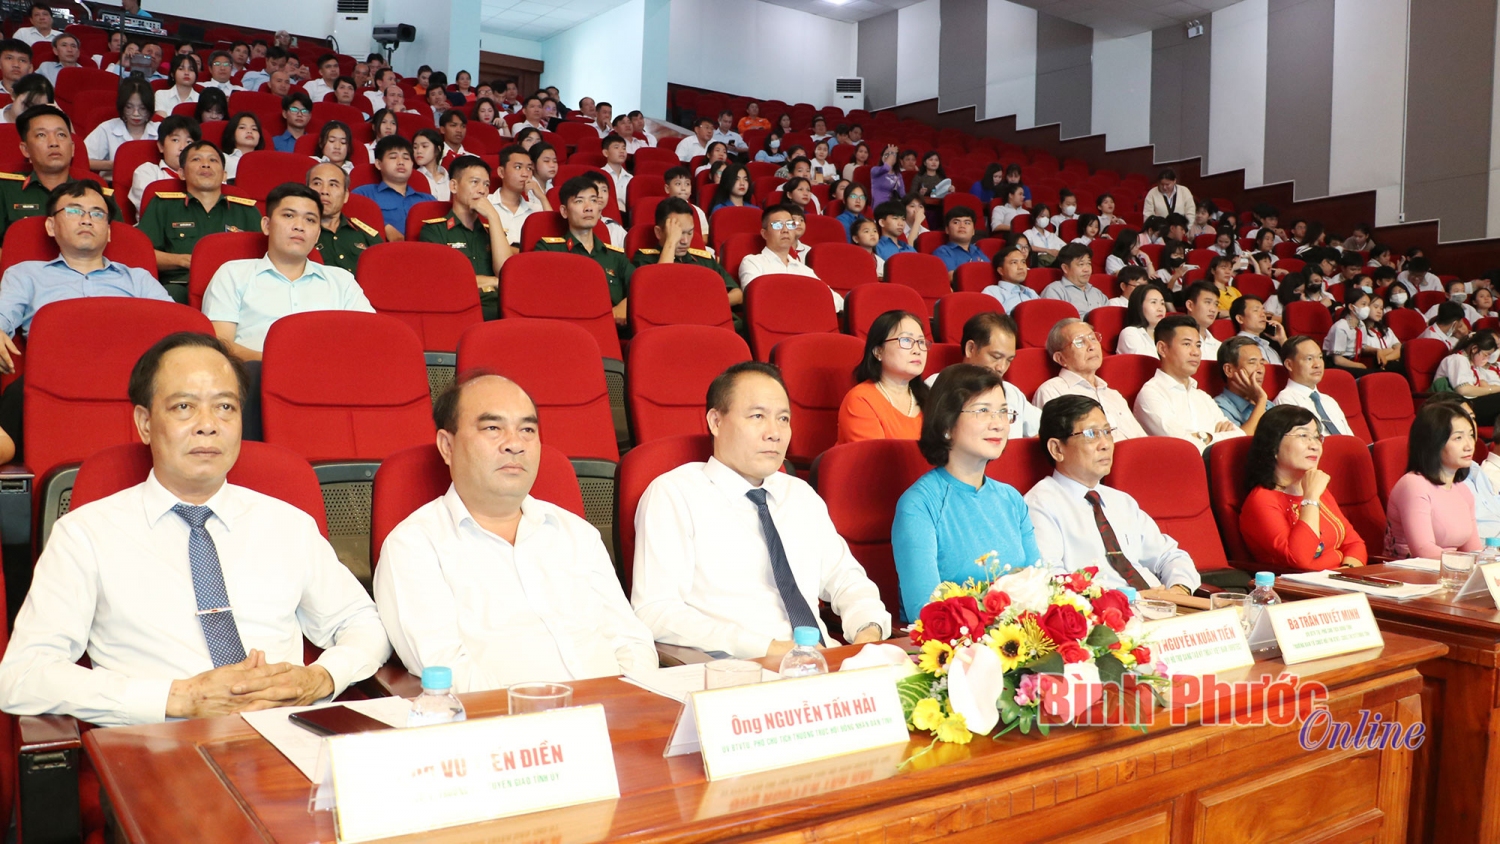 Các đại biểu tham dự lễ tổng kết, trao giải Cuộc thi sáng tạo thanh thiếu niên, nhi đồng tỉnh Bình Phước lần thứ XVI và Hội thi sáng tạo kỹ thuật tỉnh lần thứ VII (2022-2023)